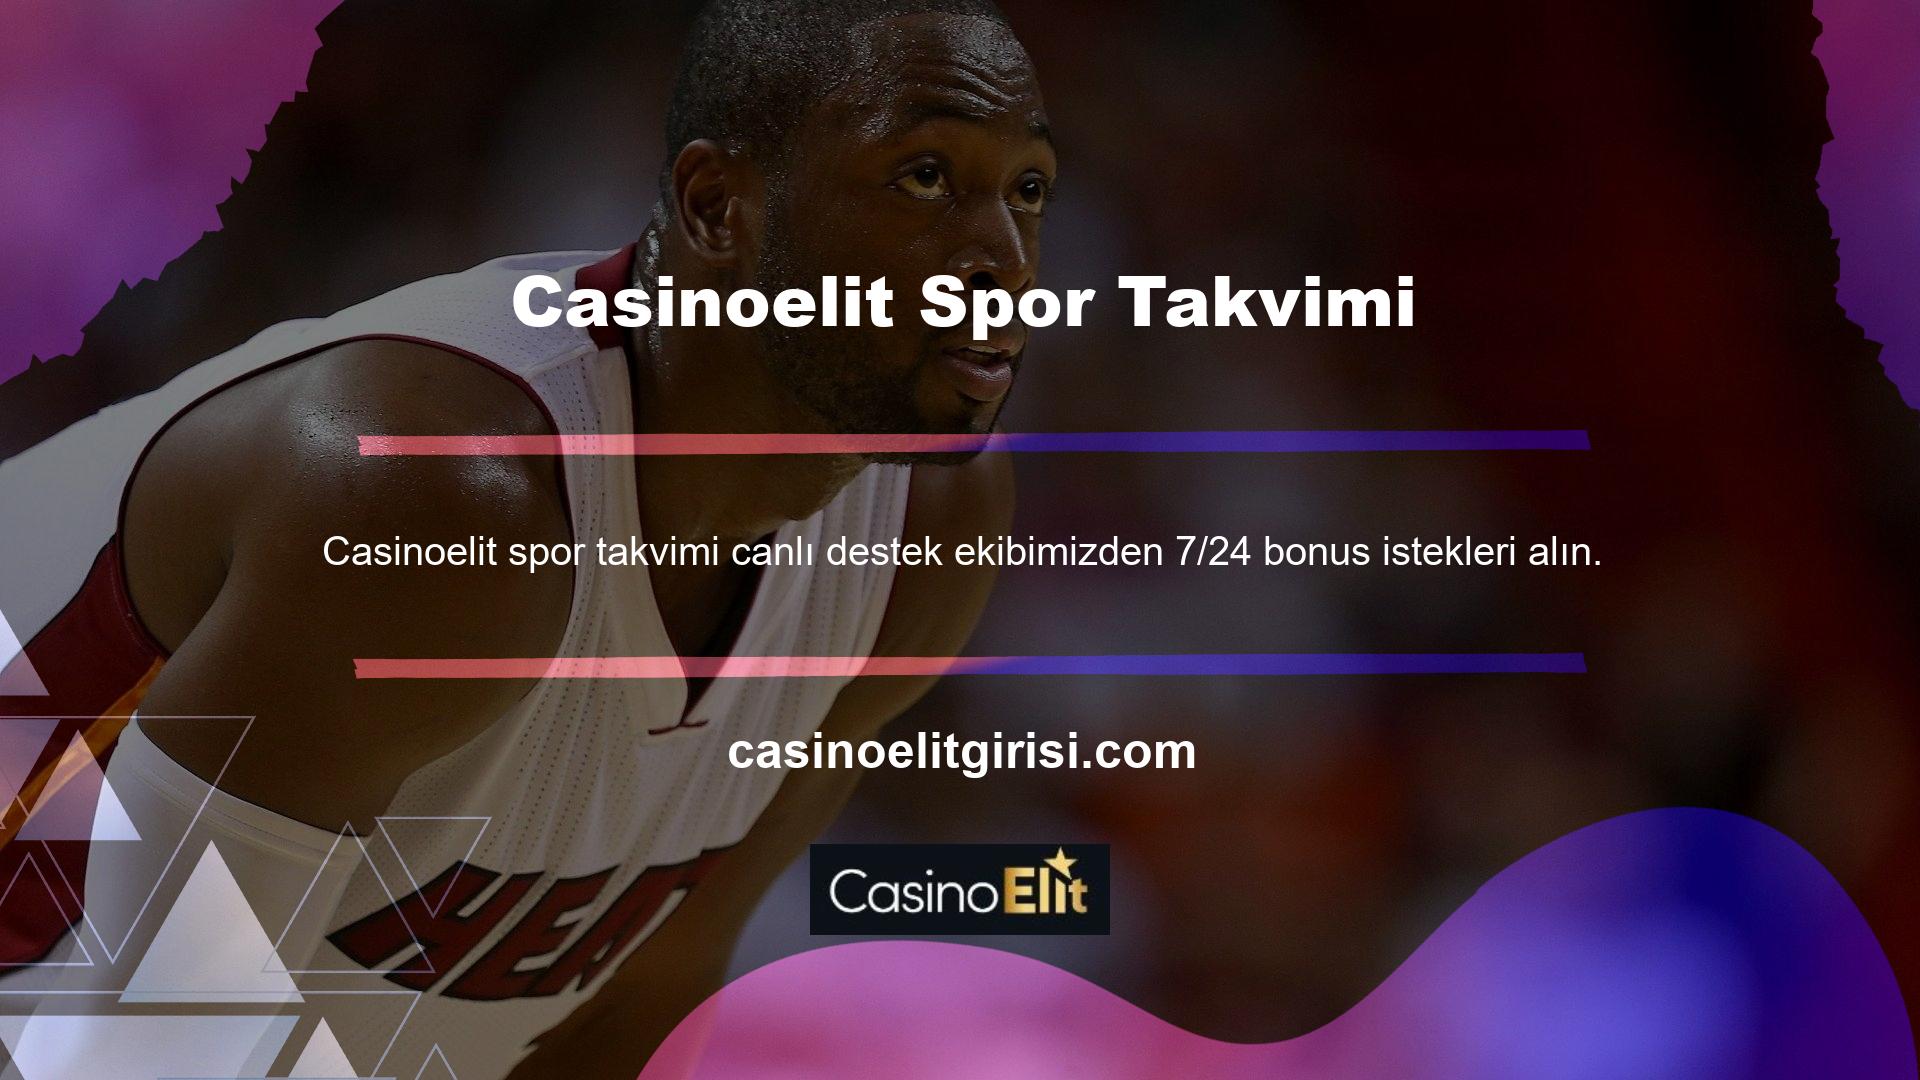 Casinoelit Spor Takvimini hemen güvenilir blog sitesi Spor Bahis' ten alın